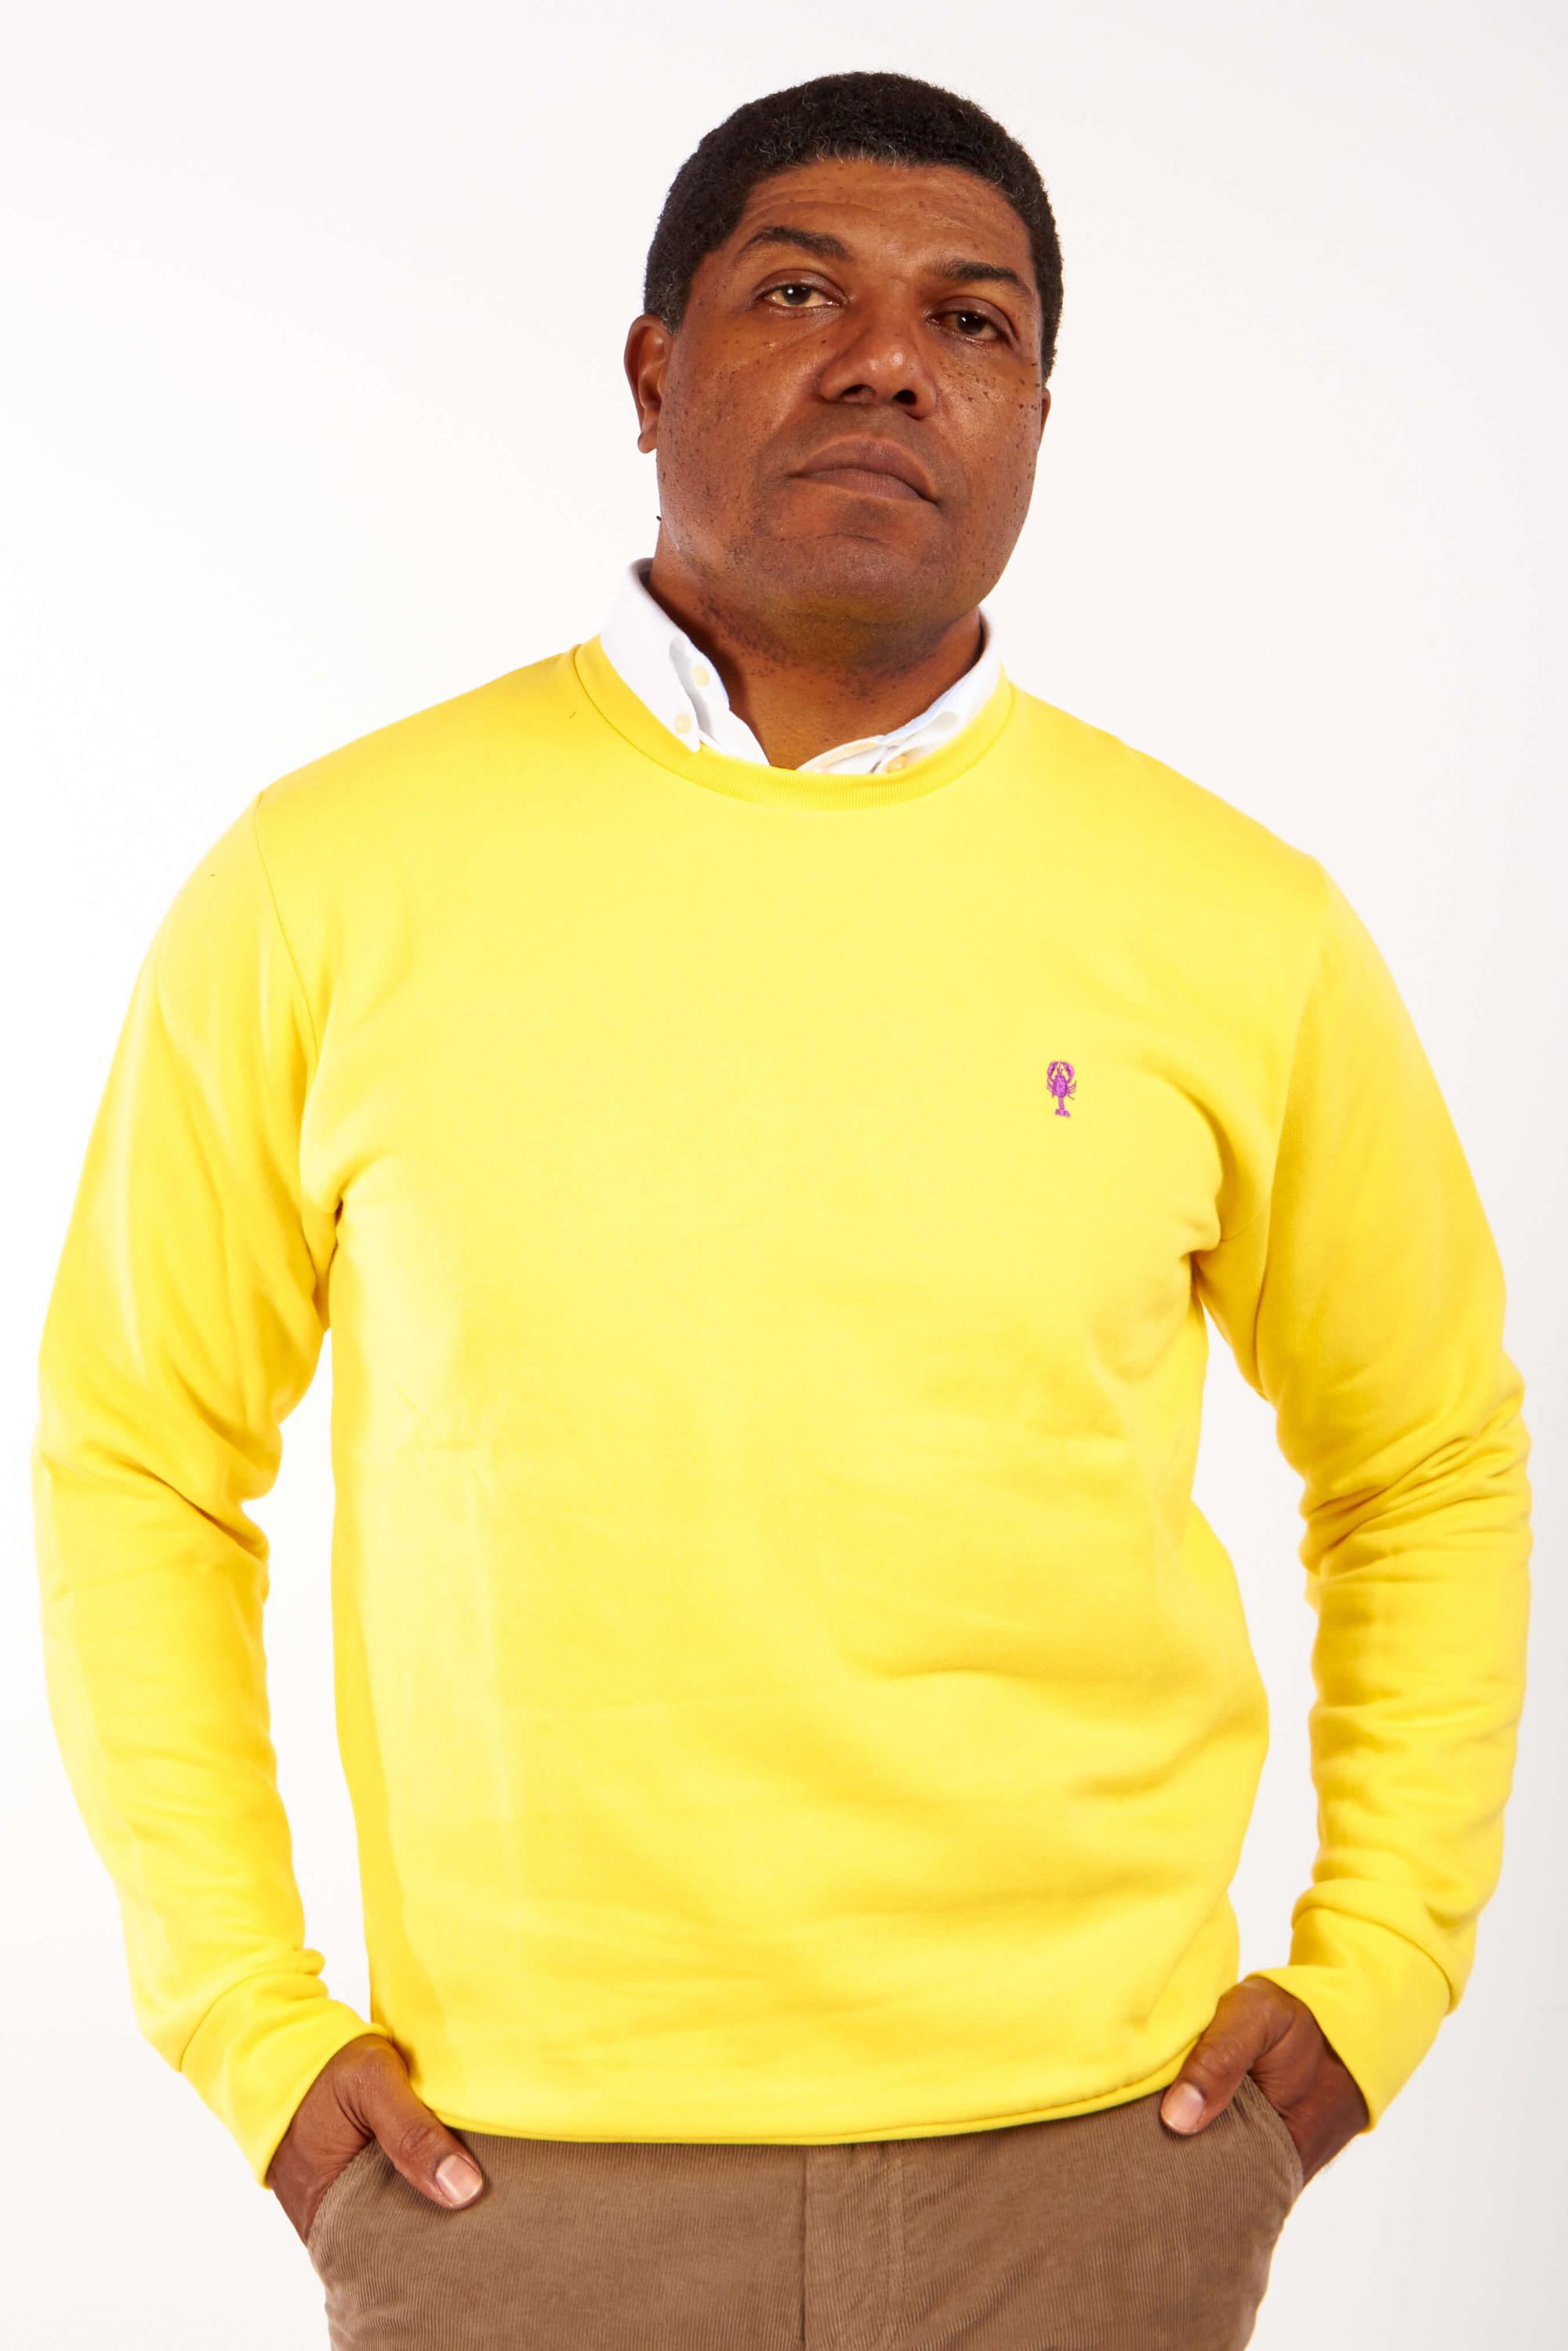 Homme de face portant un sweatshirt jaune brodé d'un homard violet.